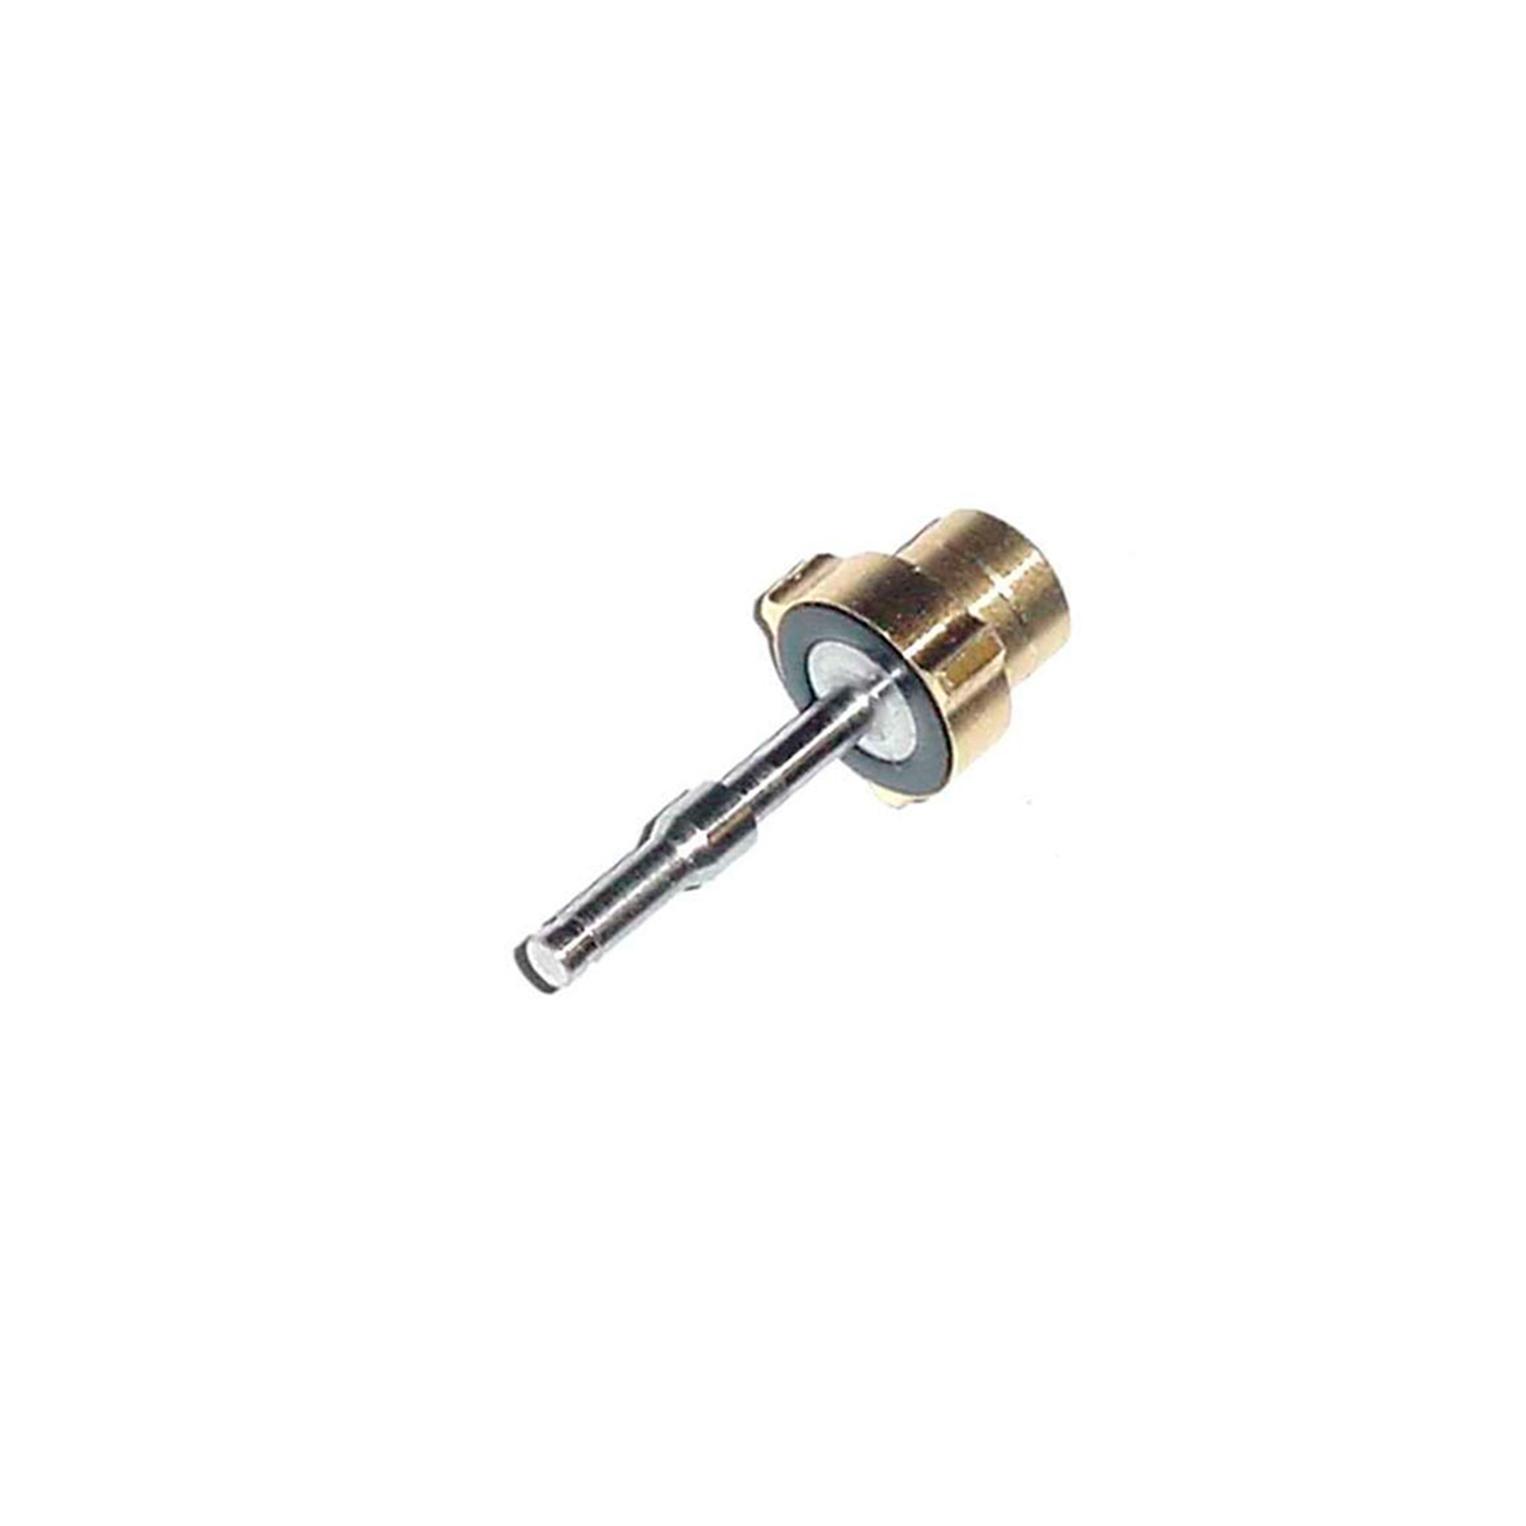 Tippman 98 valve plunger 98-pl